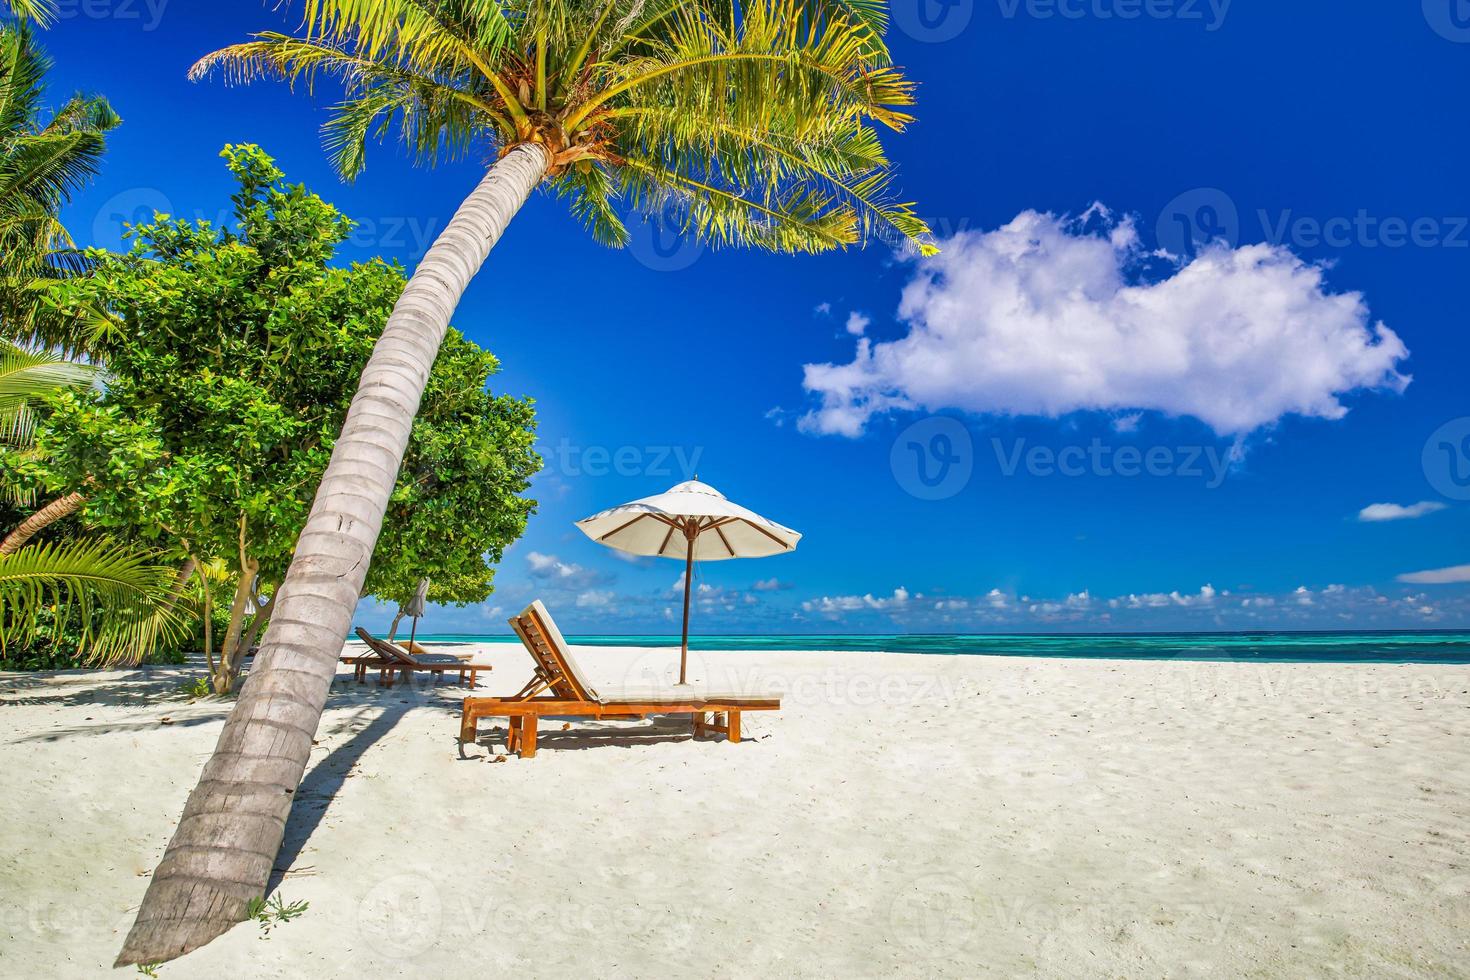 increíble playa de vacaciones. sillas en la playa de arena cerca del mar. turismo de vacaciones románticas de verano. hermoso paisaje de isla tropical. paisaje costero tranquilo, horizonte costero de arena relajante, hojas de palma foto